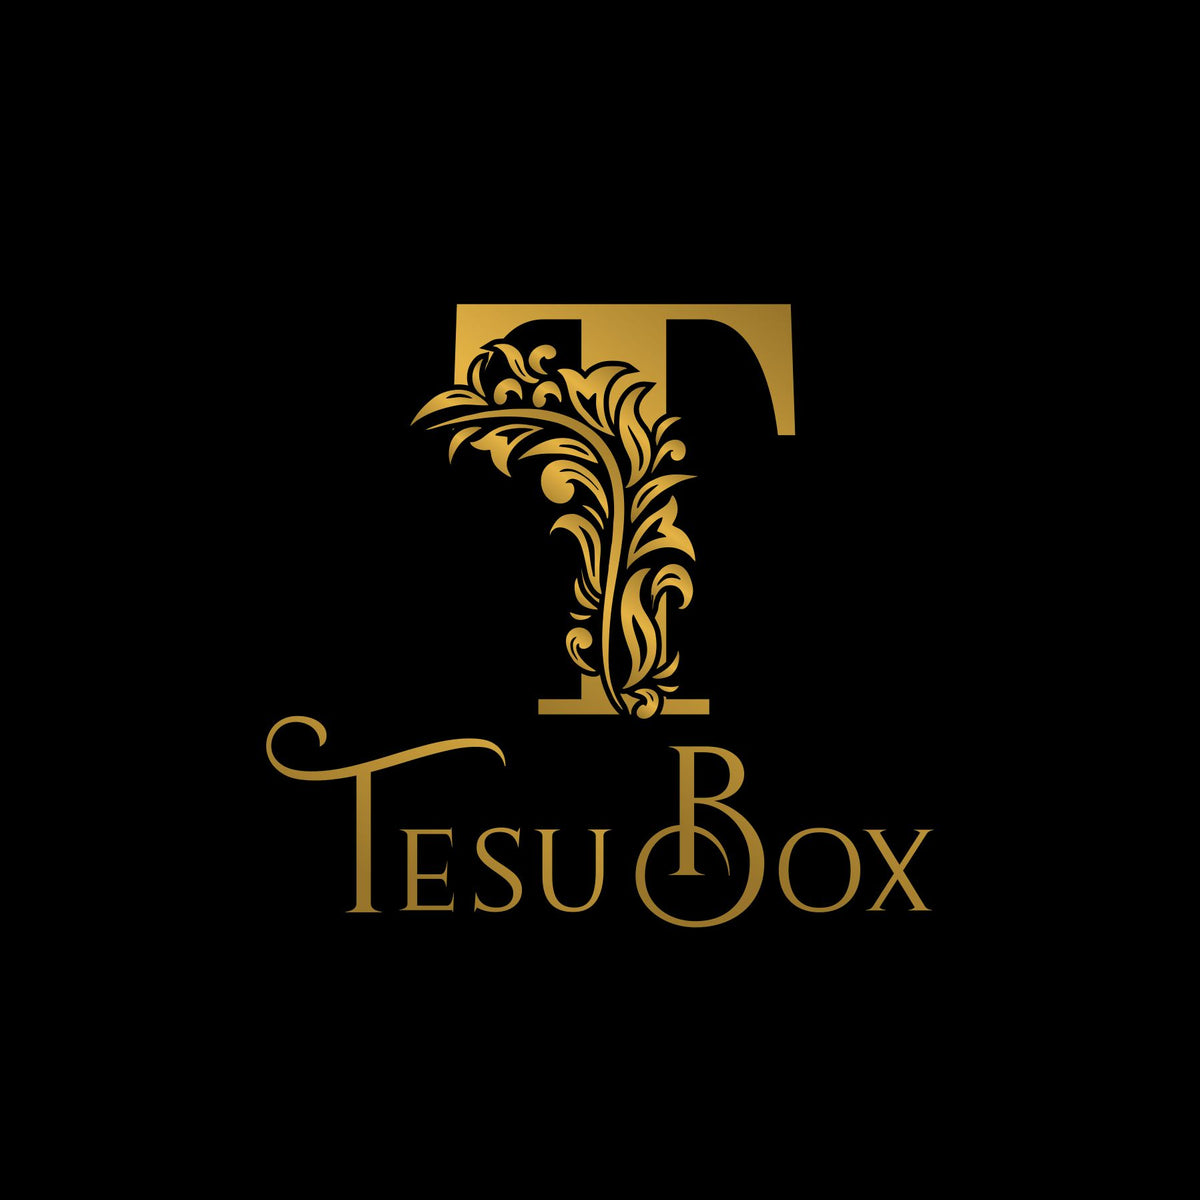 TesuBox